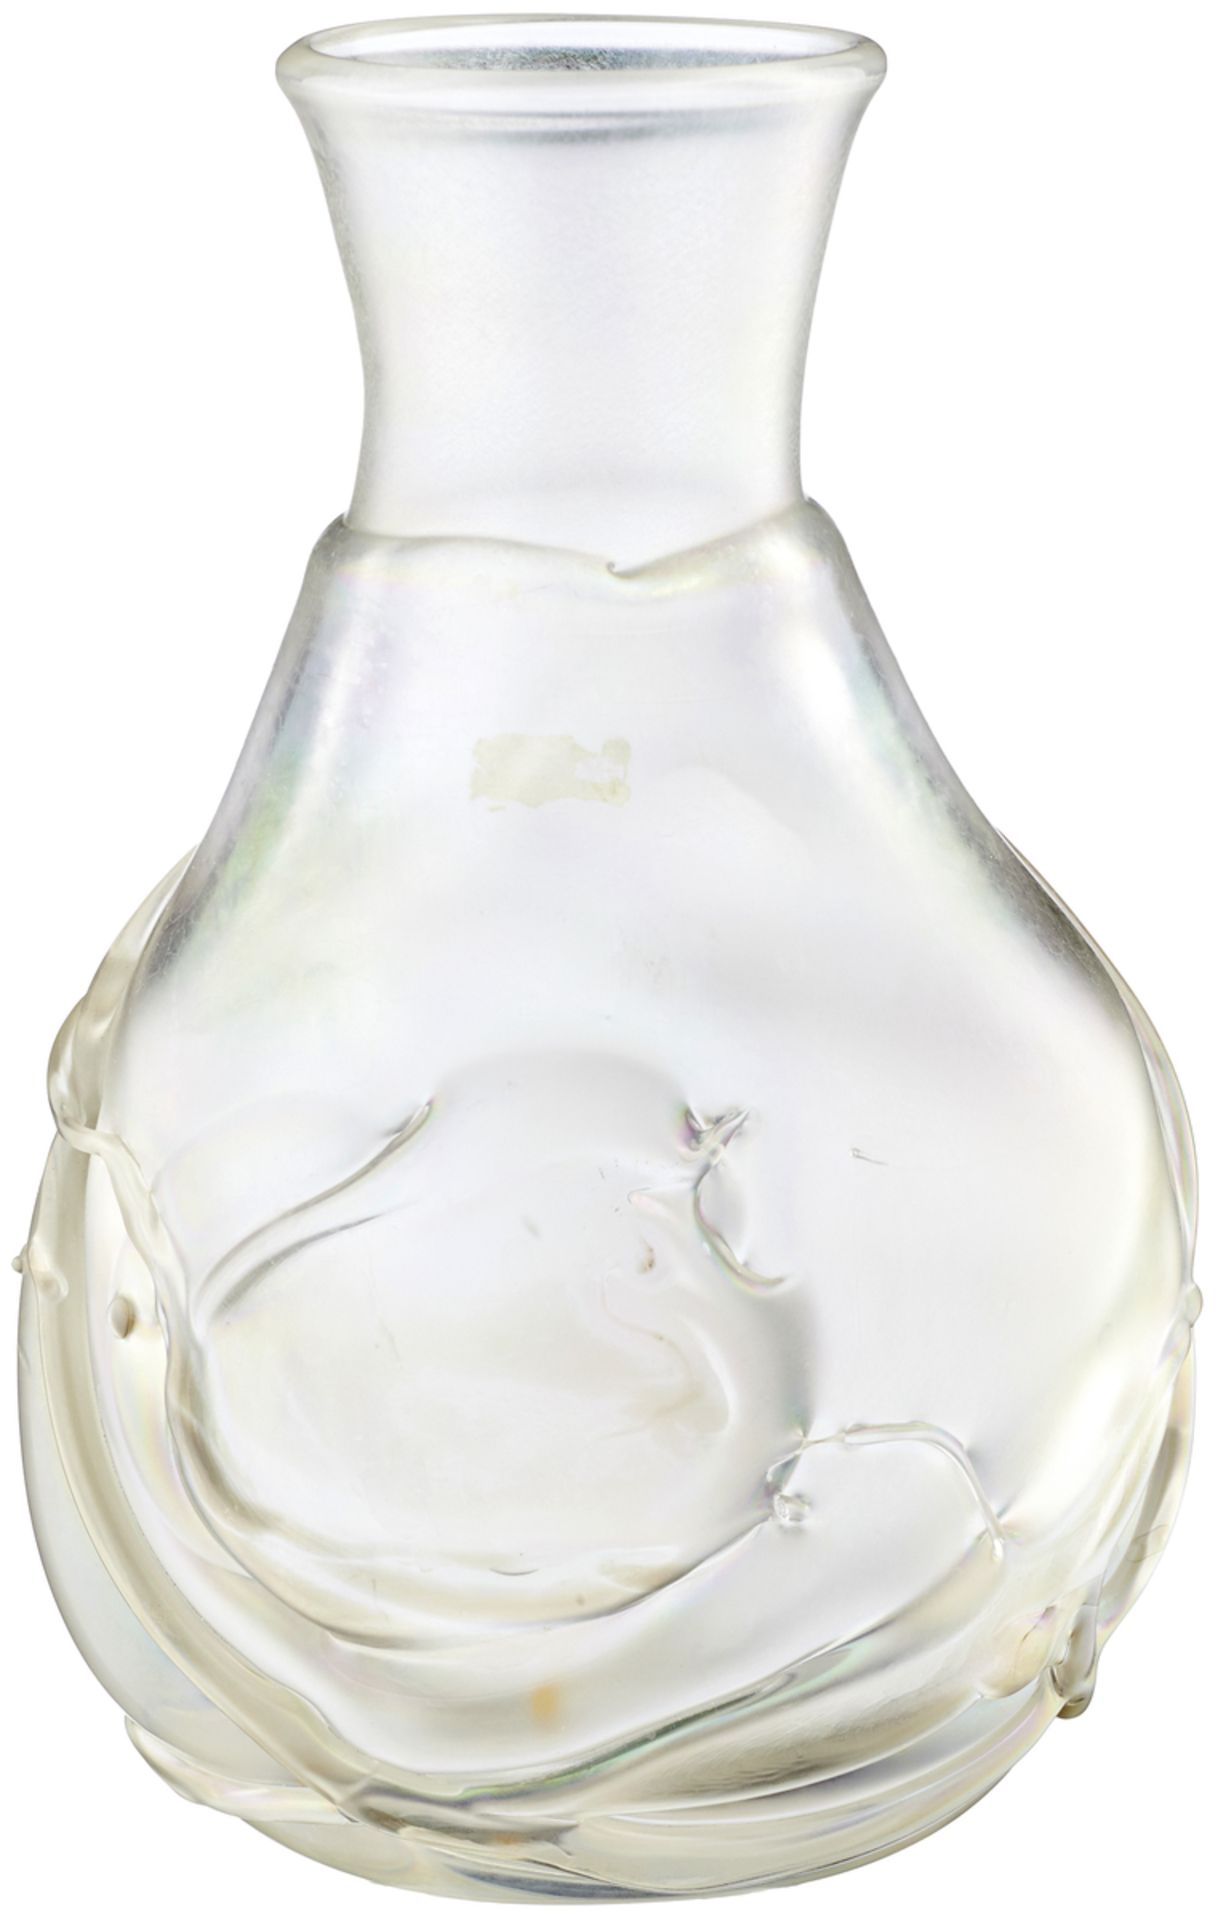 Vase "Atelje 385"Boda 1984. Entwurf Bertil Vallien aus der Reihe "Pearl". Farbloses Glas mit